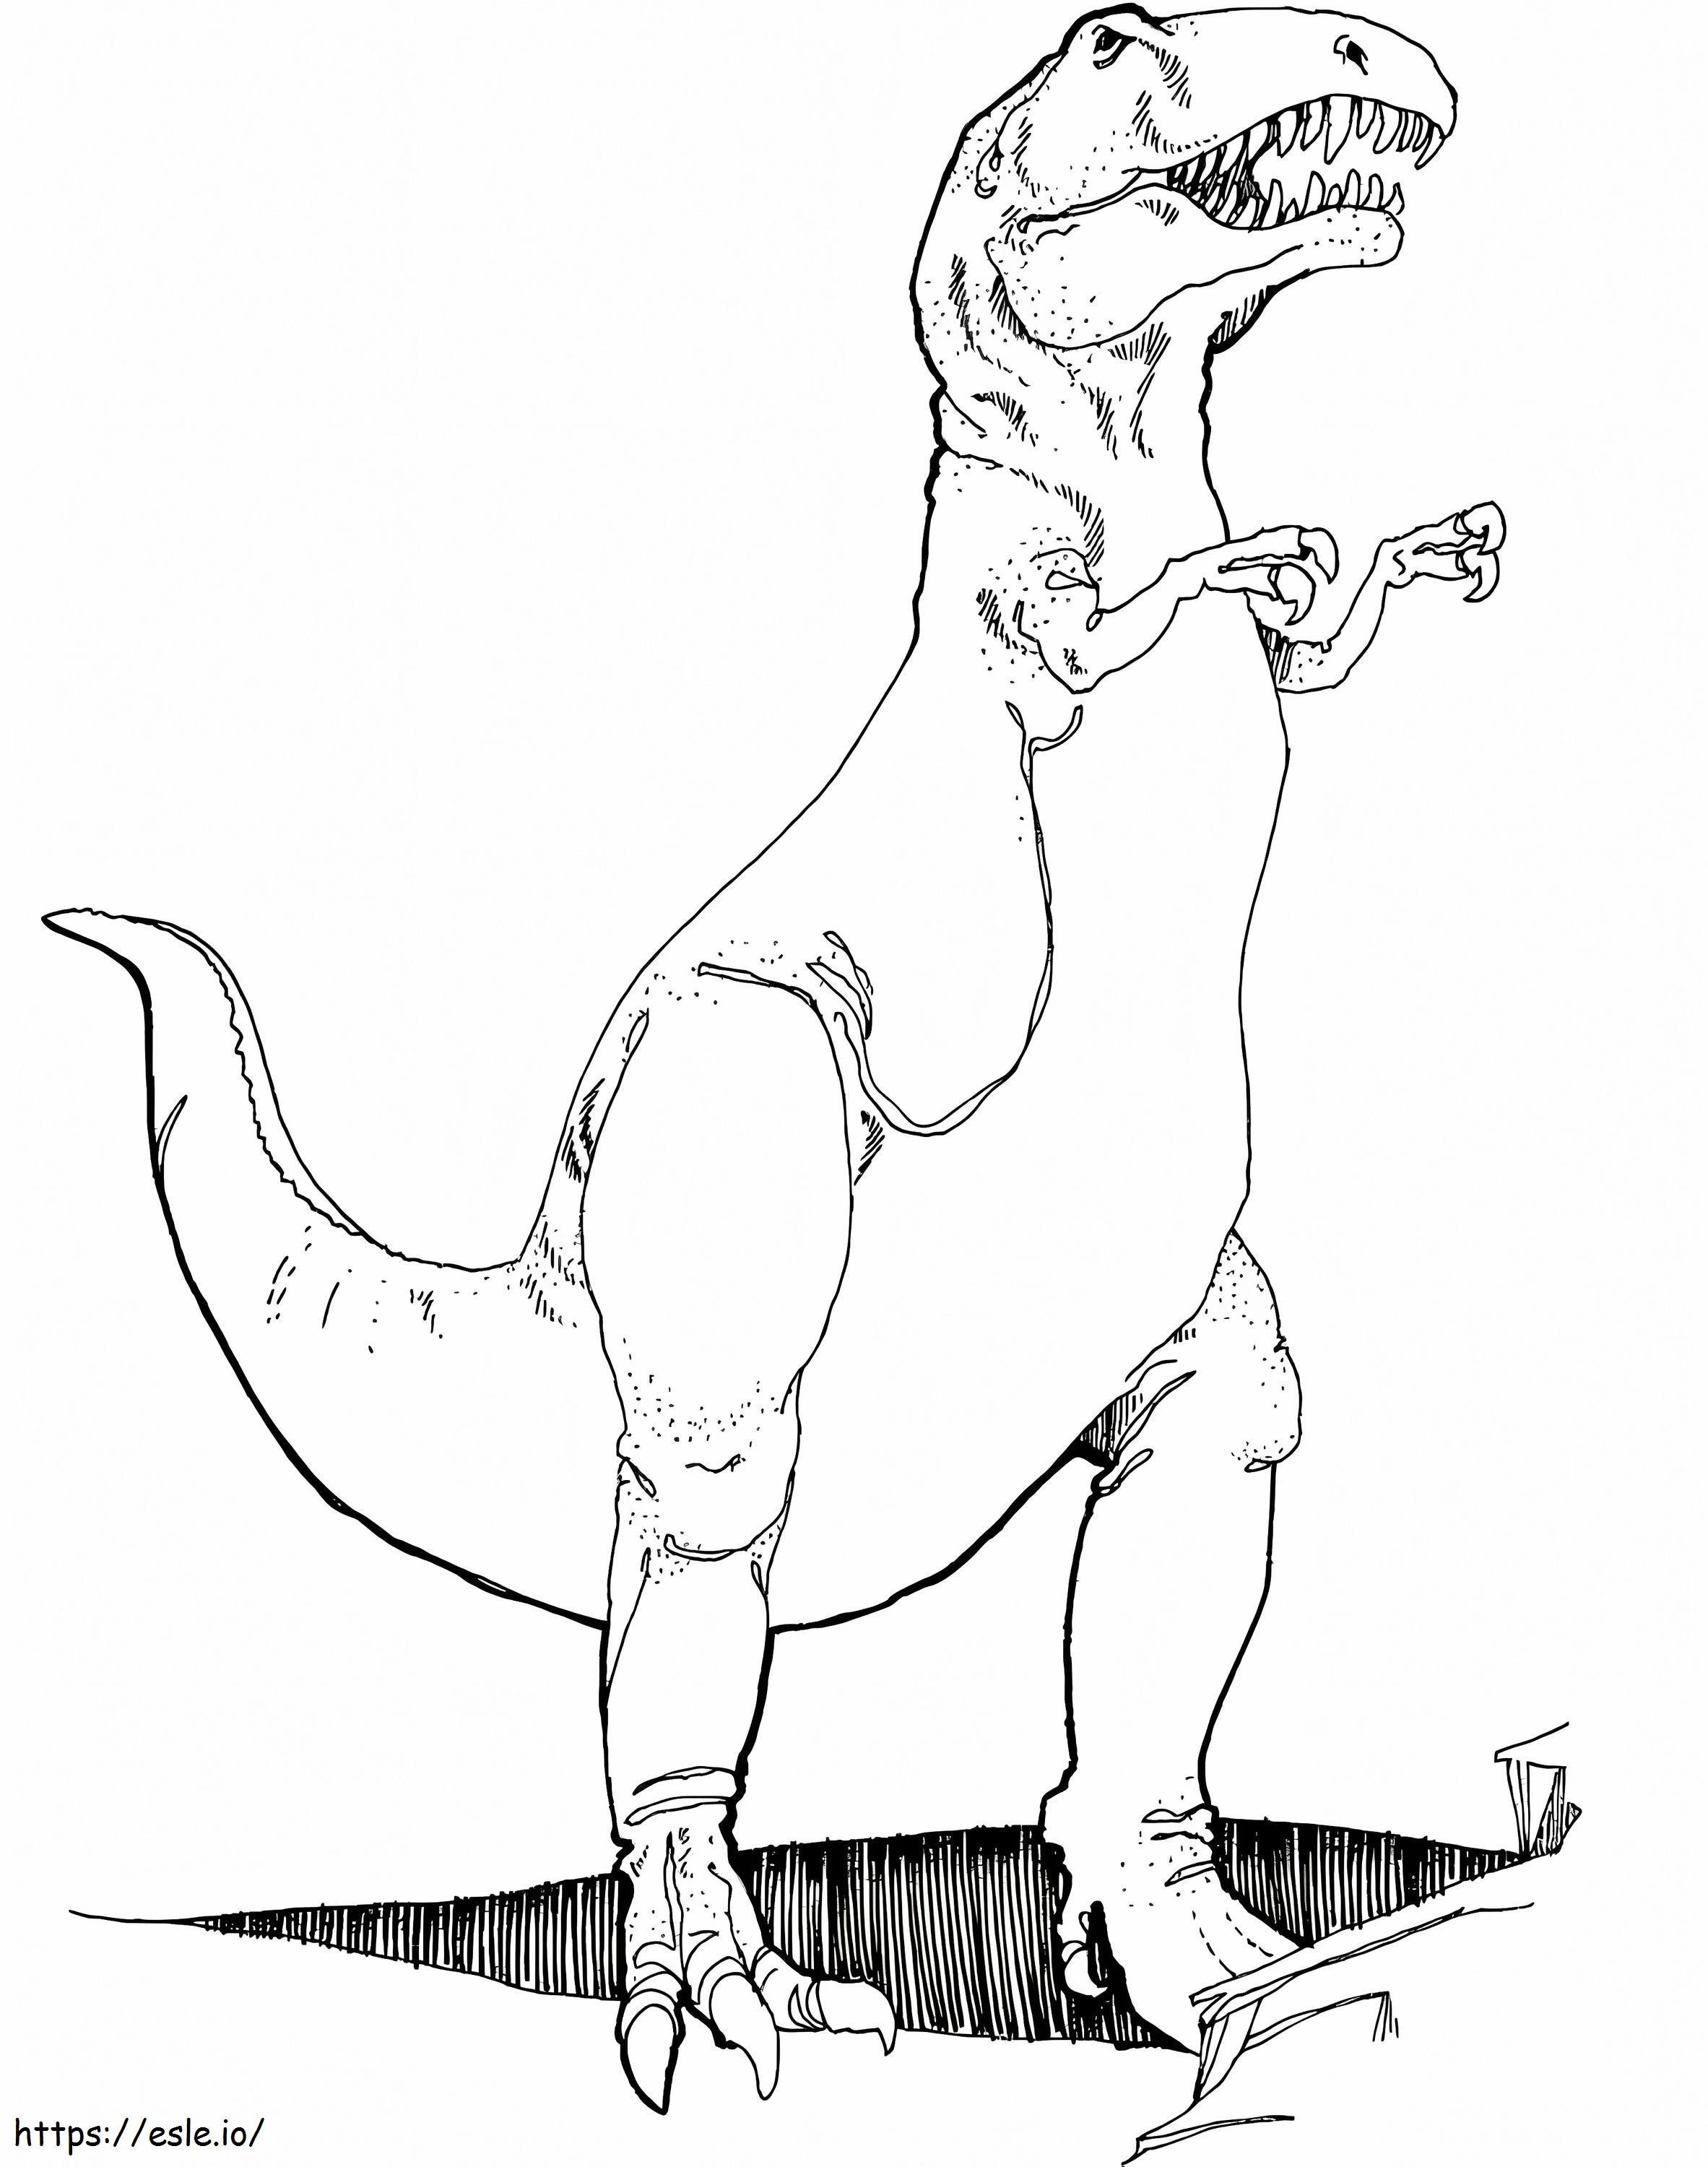 Tyrannosaurus Dinozor boyama